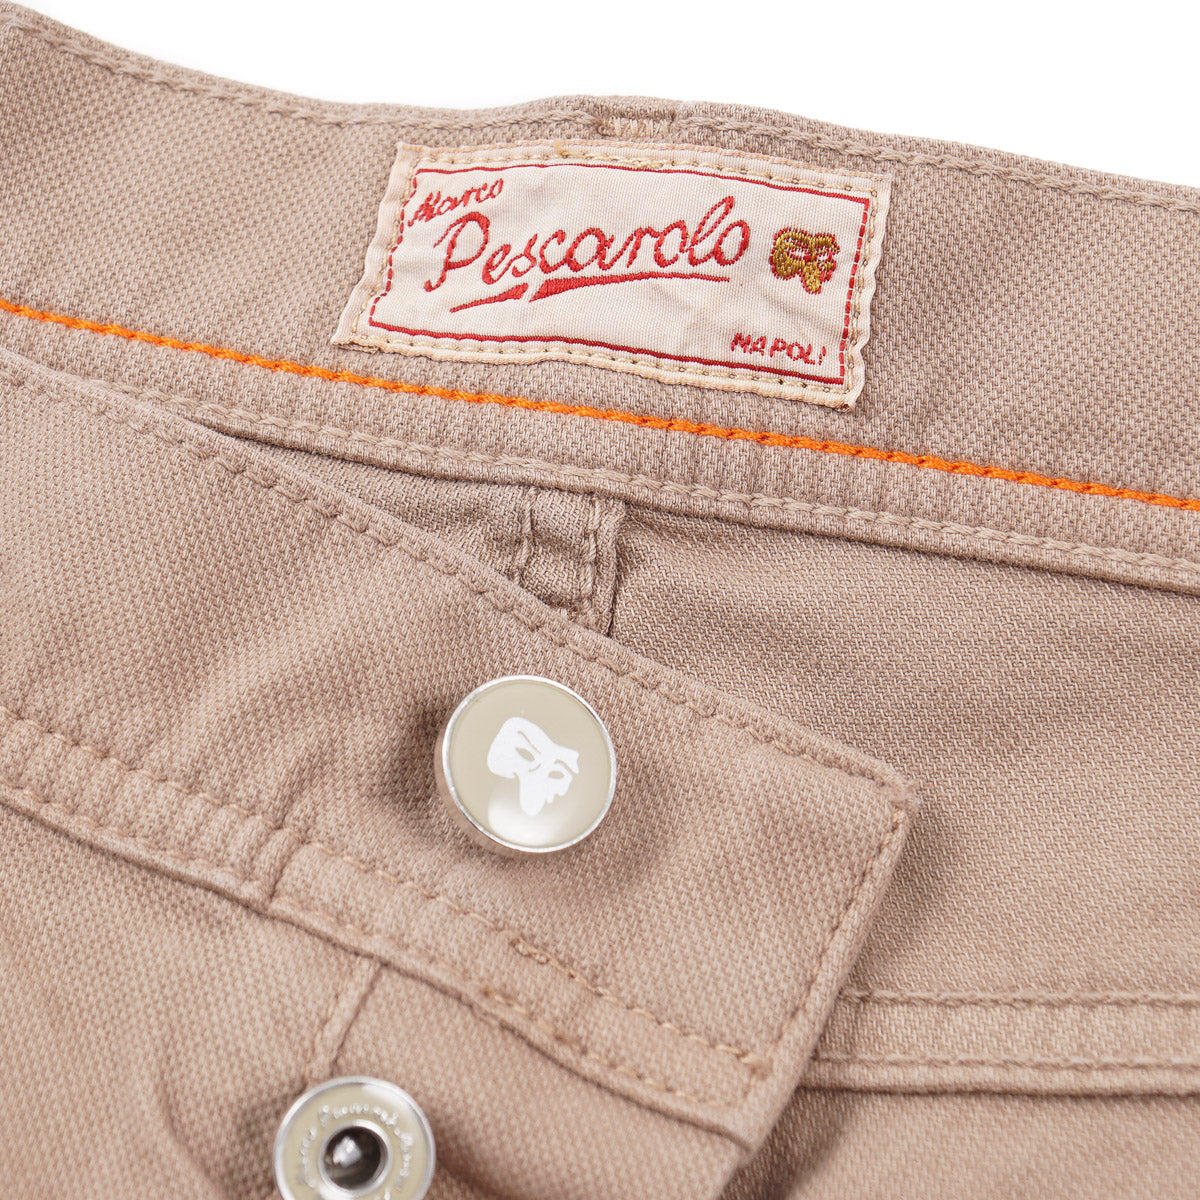 Marco Pescarolo 5-Pocket Cotton Pants - Top Shelf Apparel